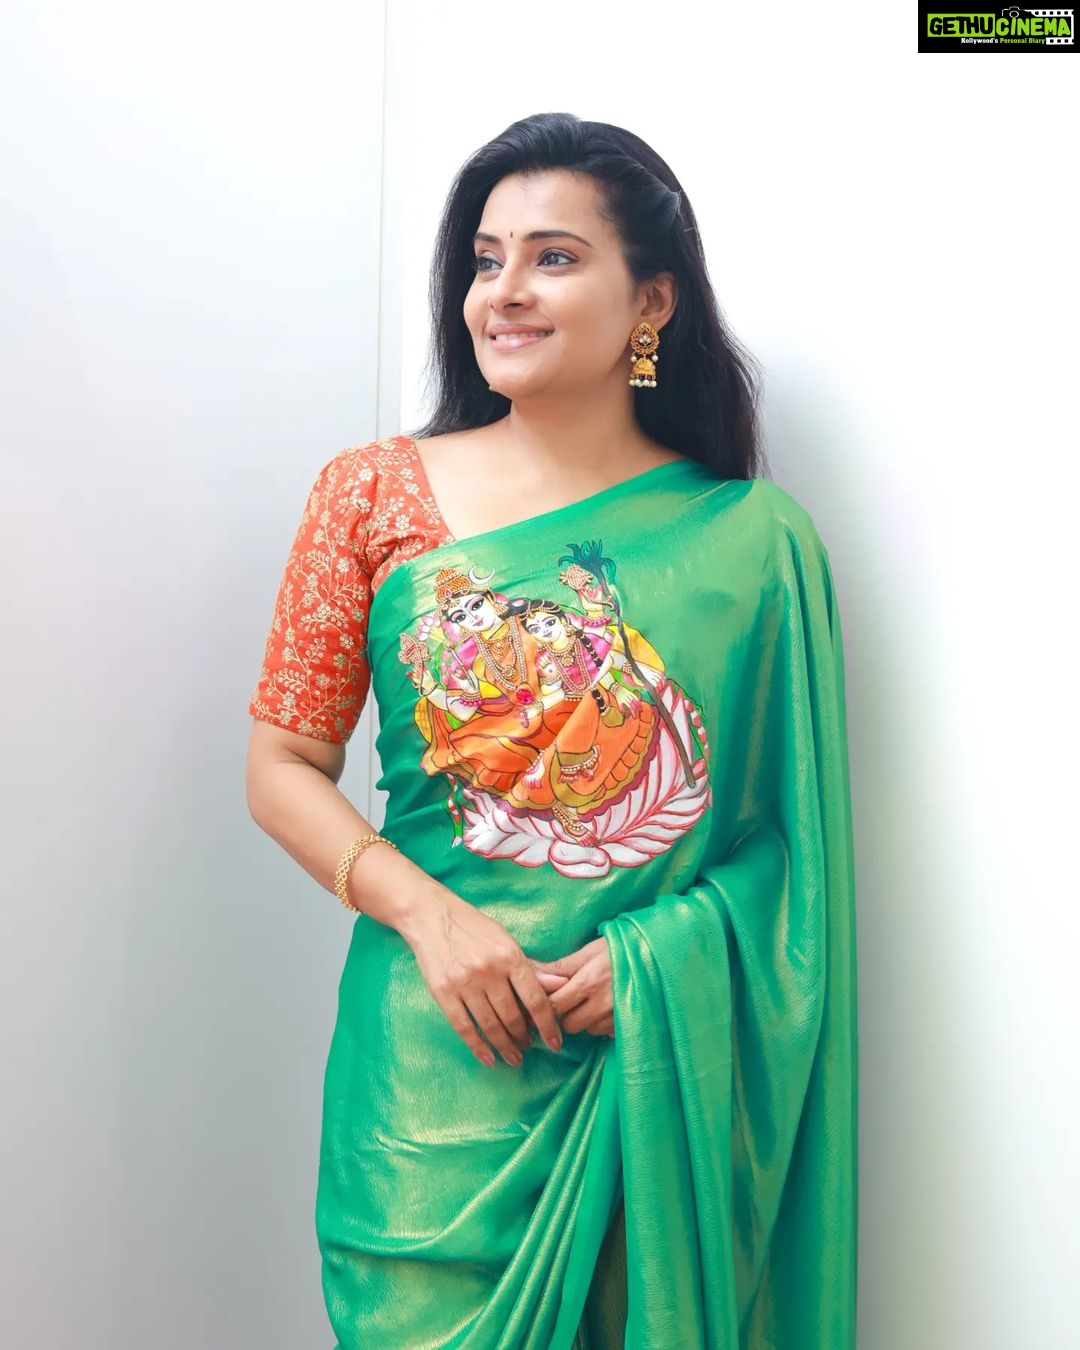 Actress Shruthi raj Beautiful traditional saree Photos